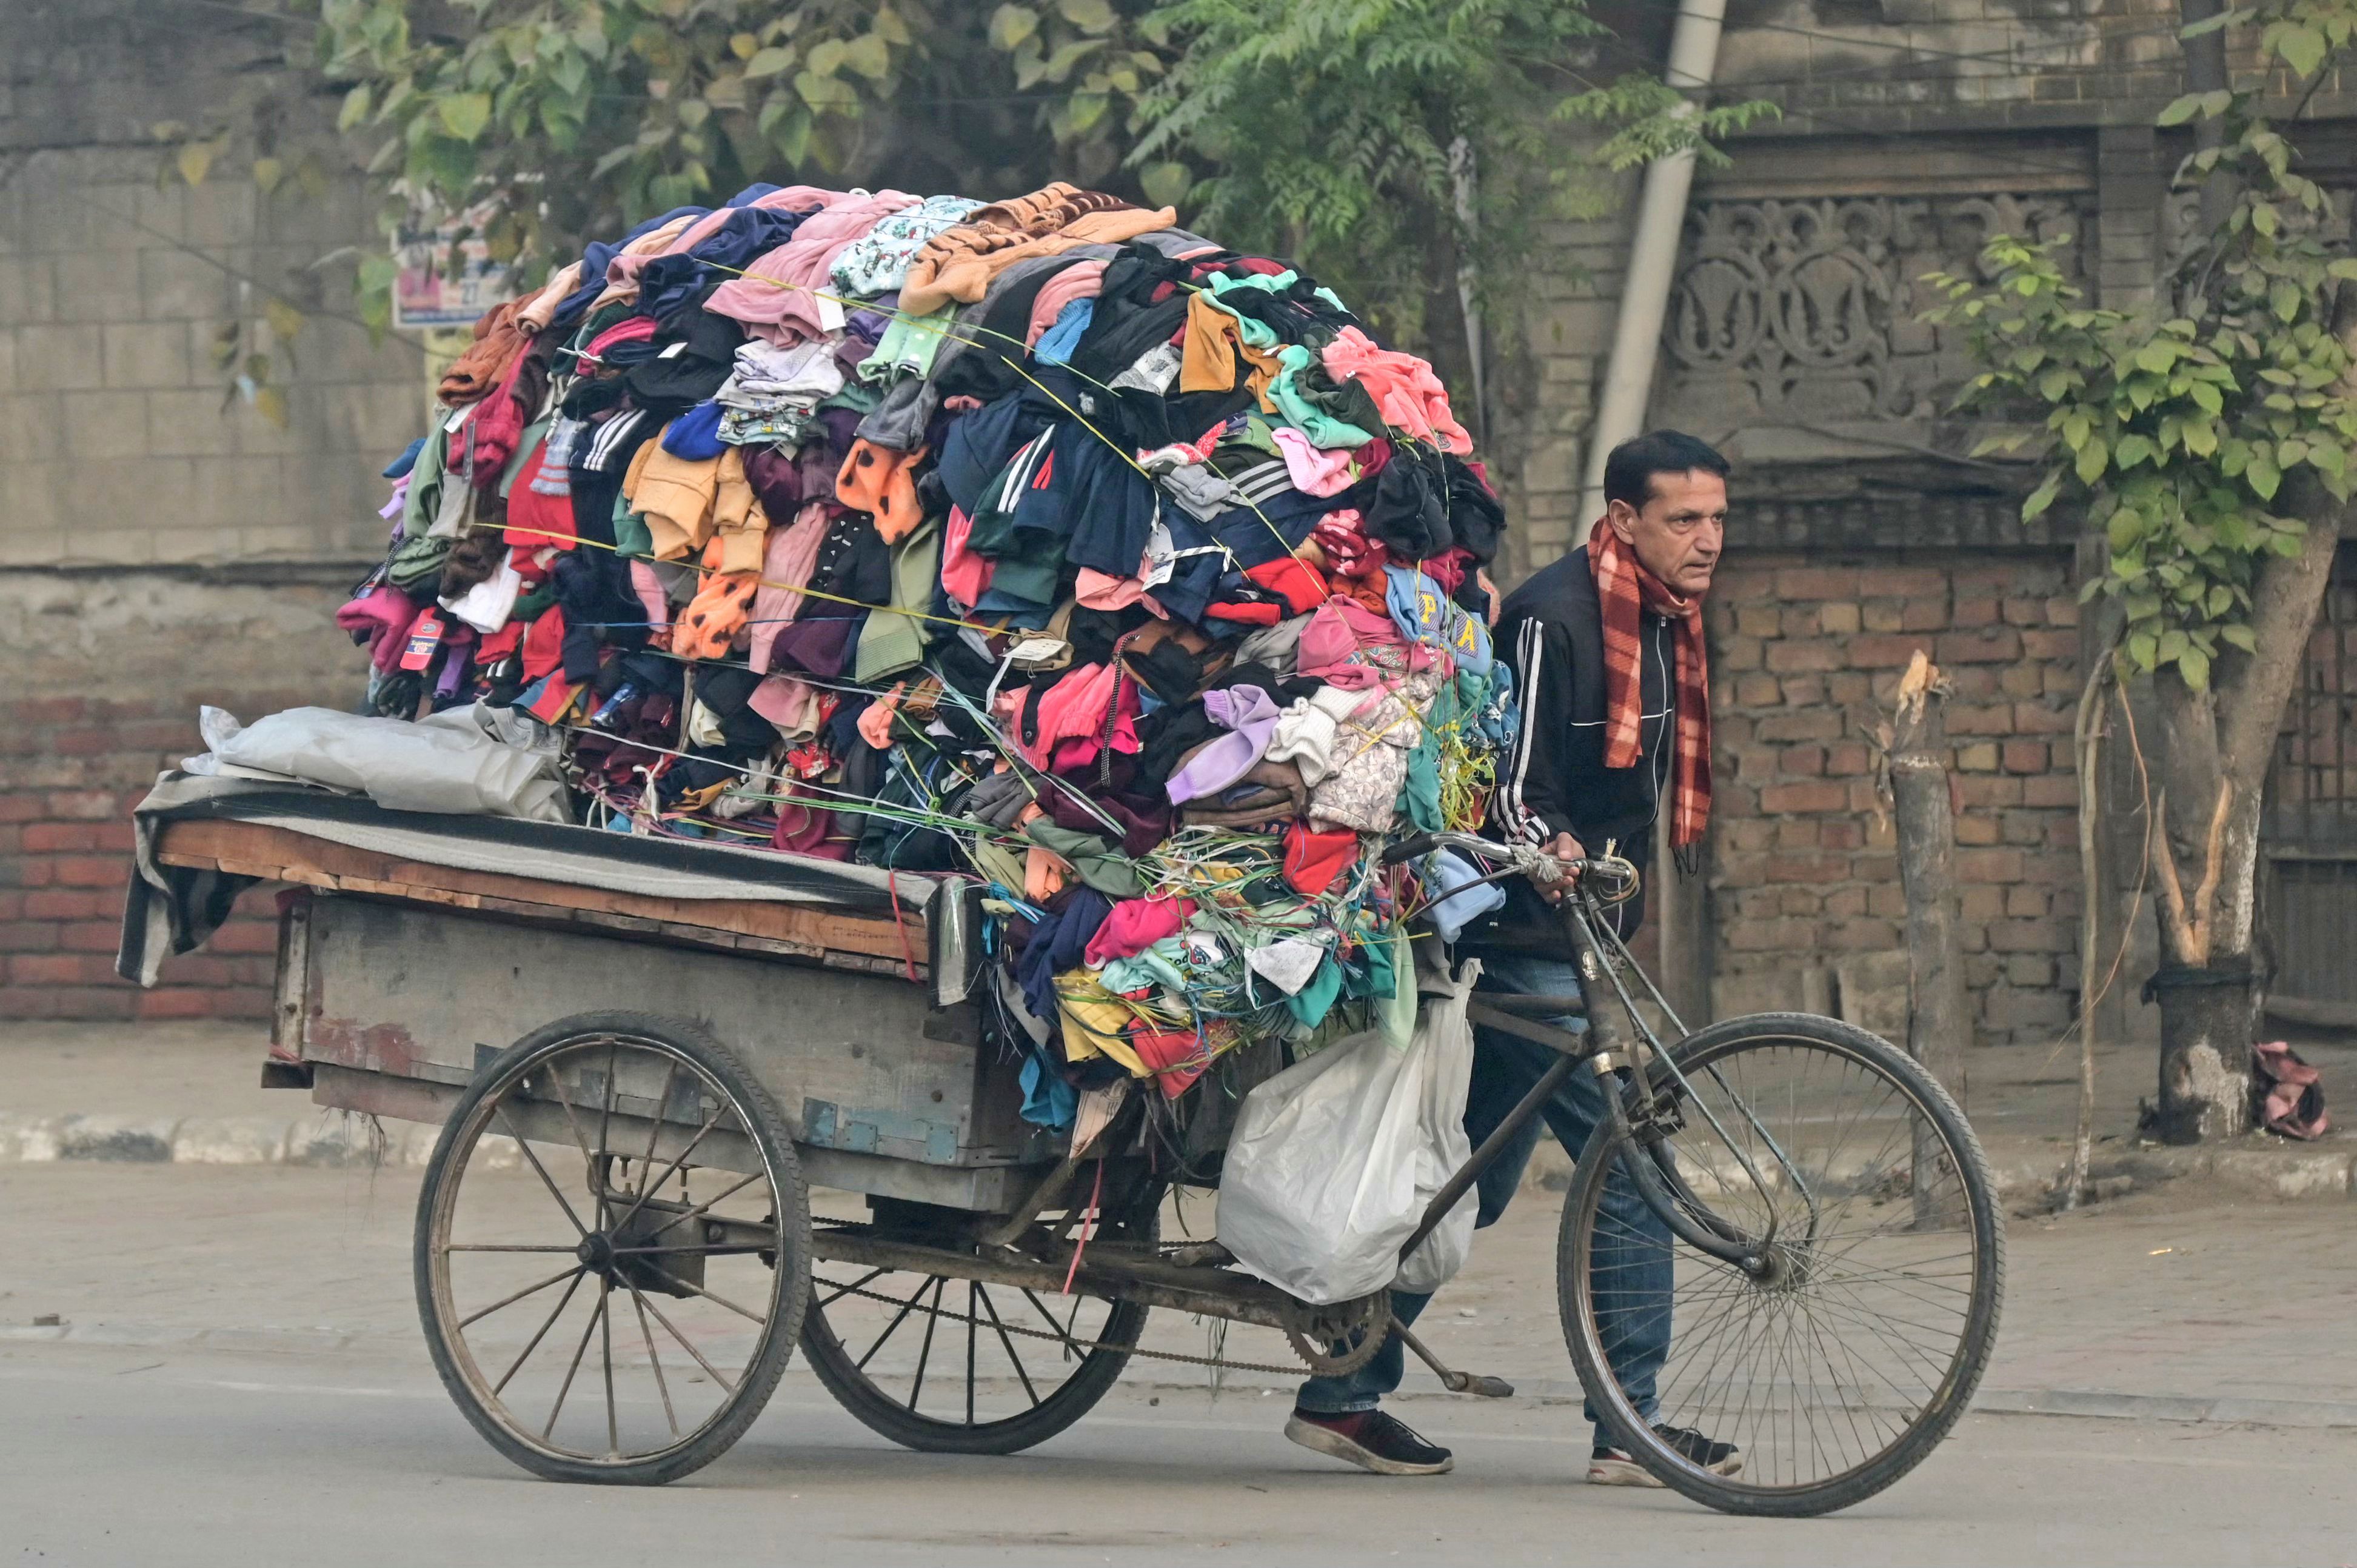 L’air pollué sépare les poumons de New Delhi entre pauvreté et richesse